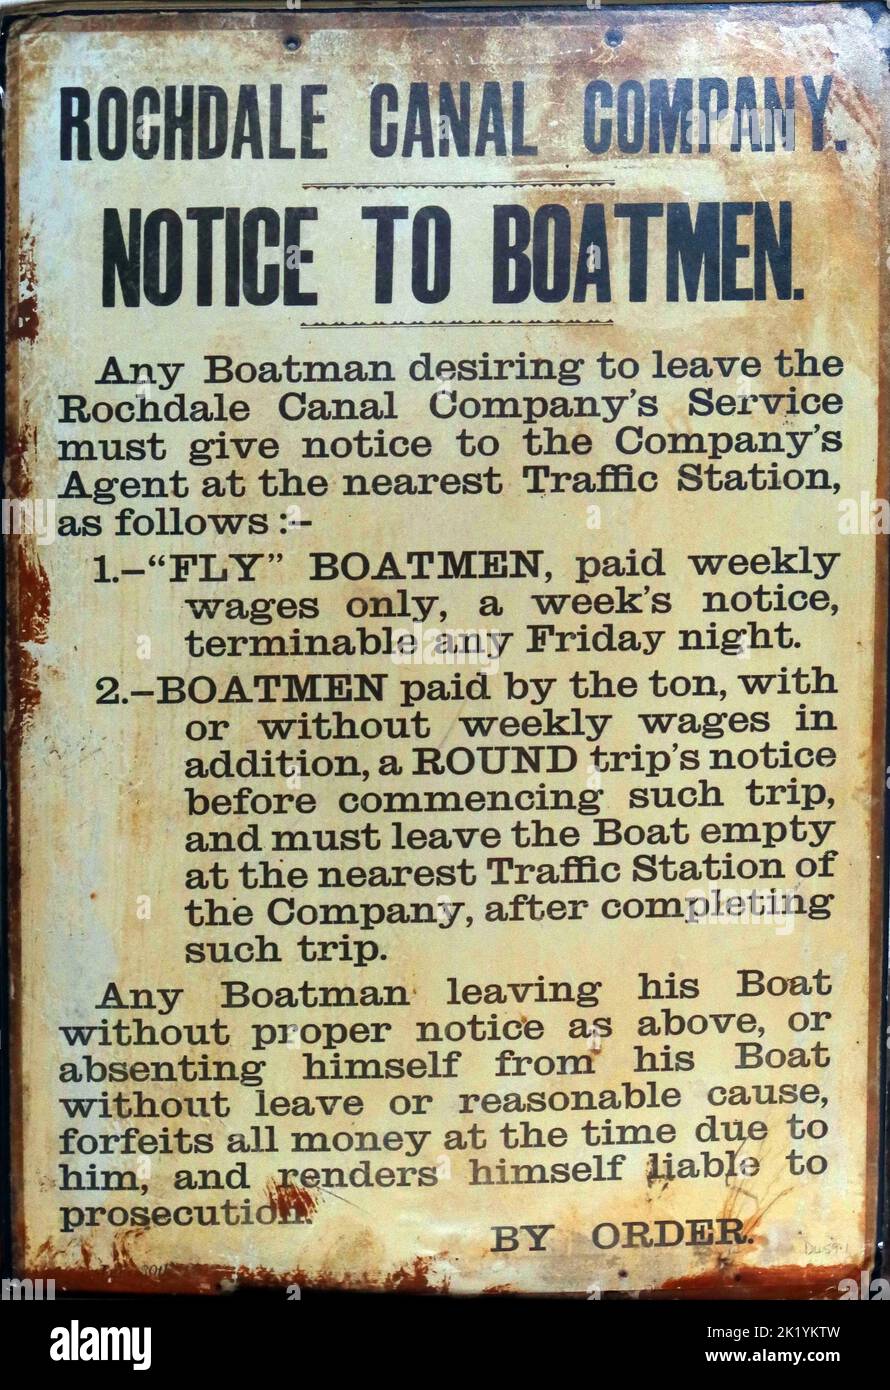 Metal Enamel segno, Rochdale Canal Company, avviso a Boatmen segno, norme sul lavoro, che dà norme di preavviso per ordine e responsabile per l'azione penale Foto Stock